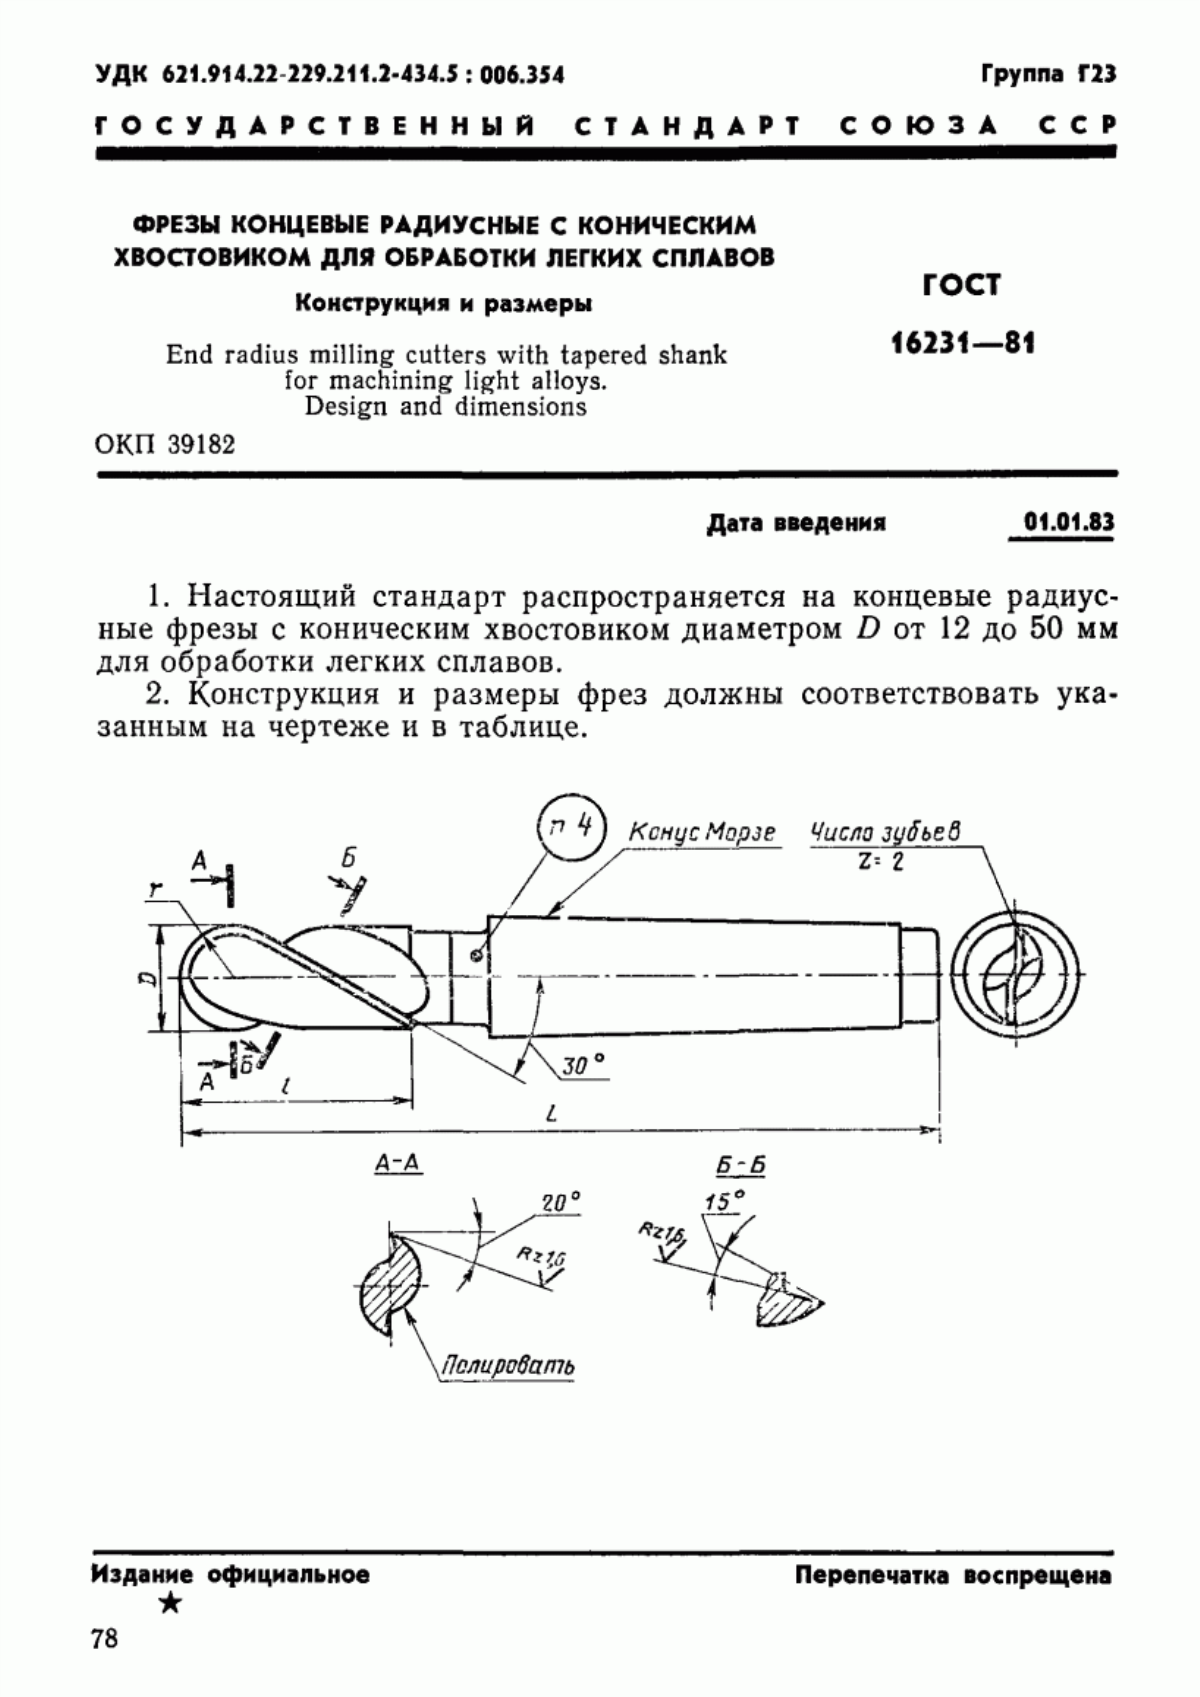 ГОСТ 16231-81 Фрезы концевые радиусные с коническим хвостовиком для обработки легких сплавов. Конструкция и размеры